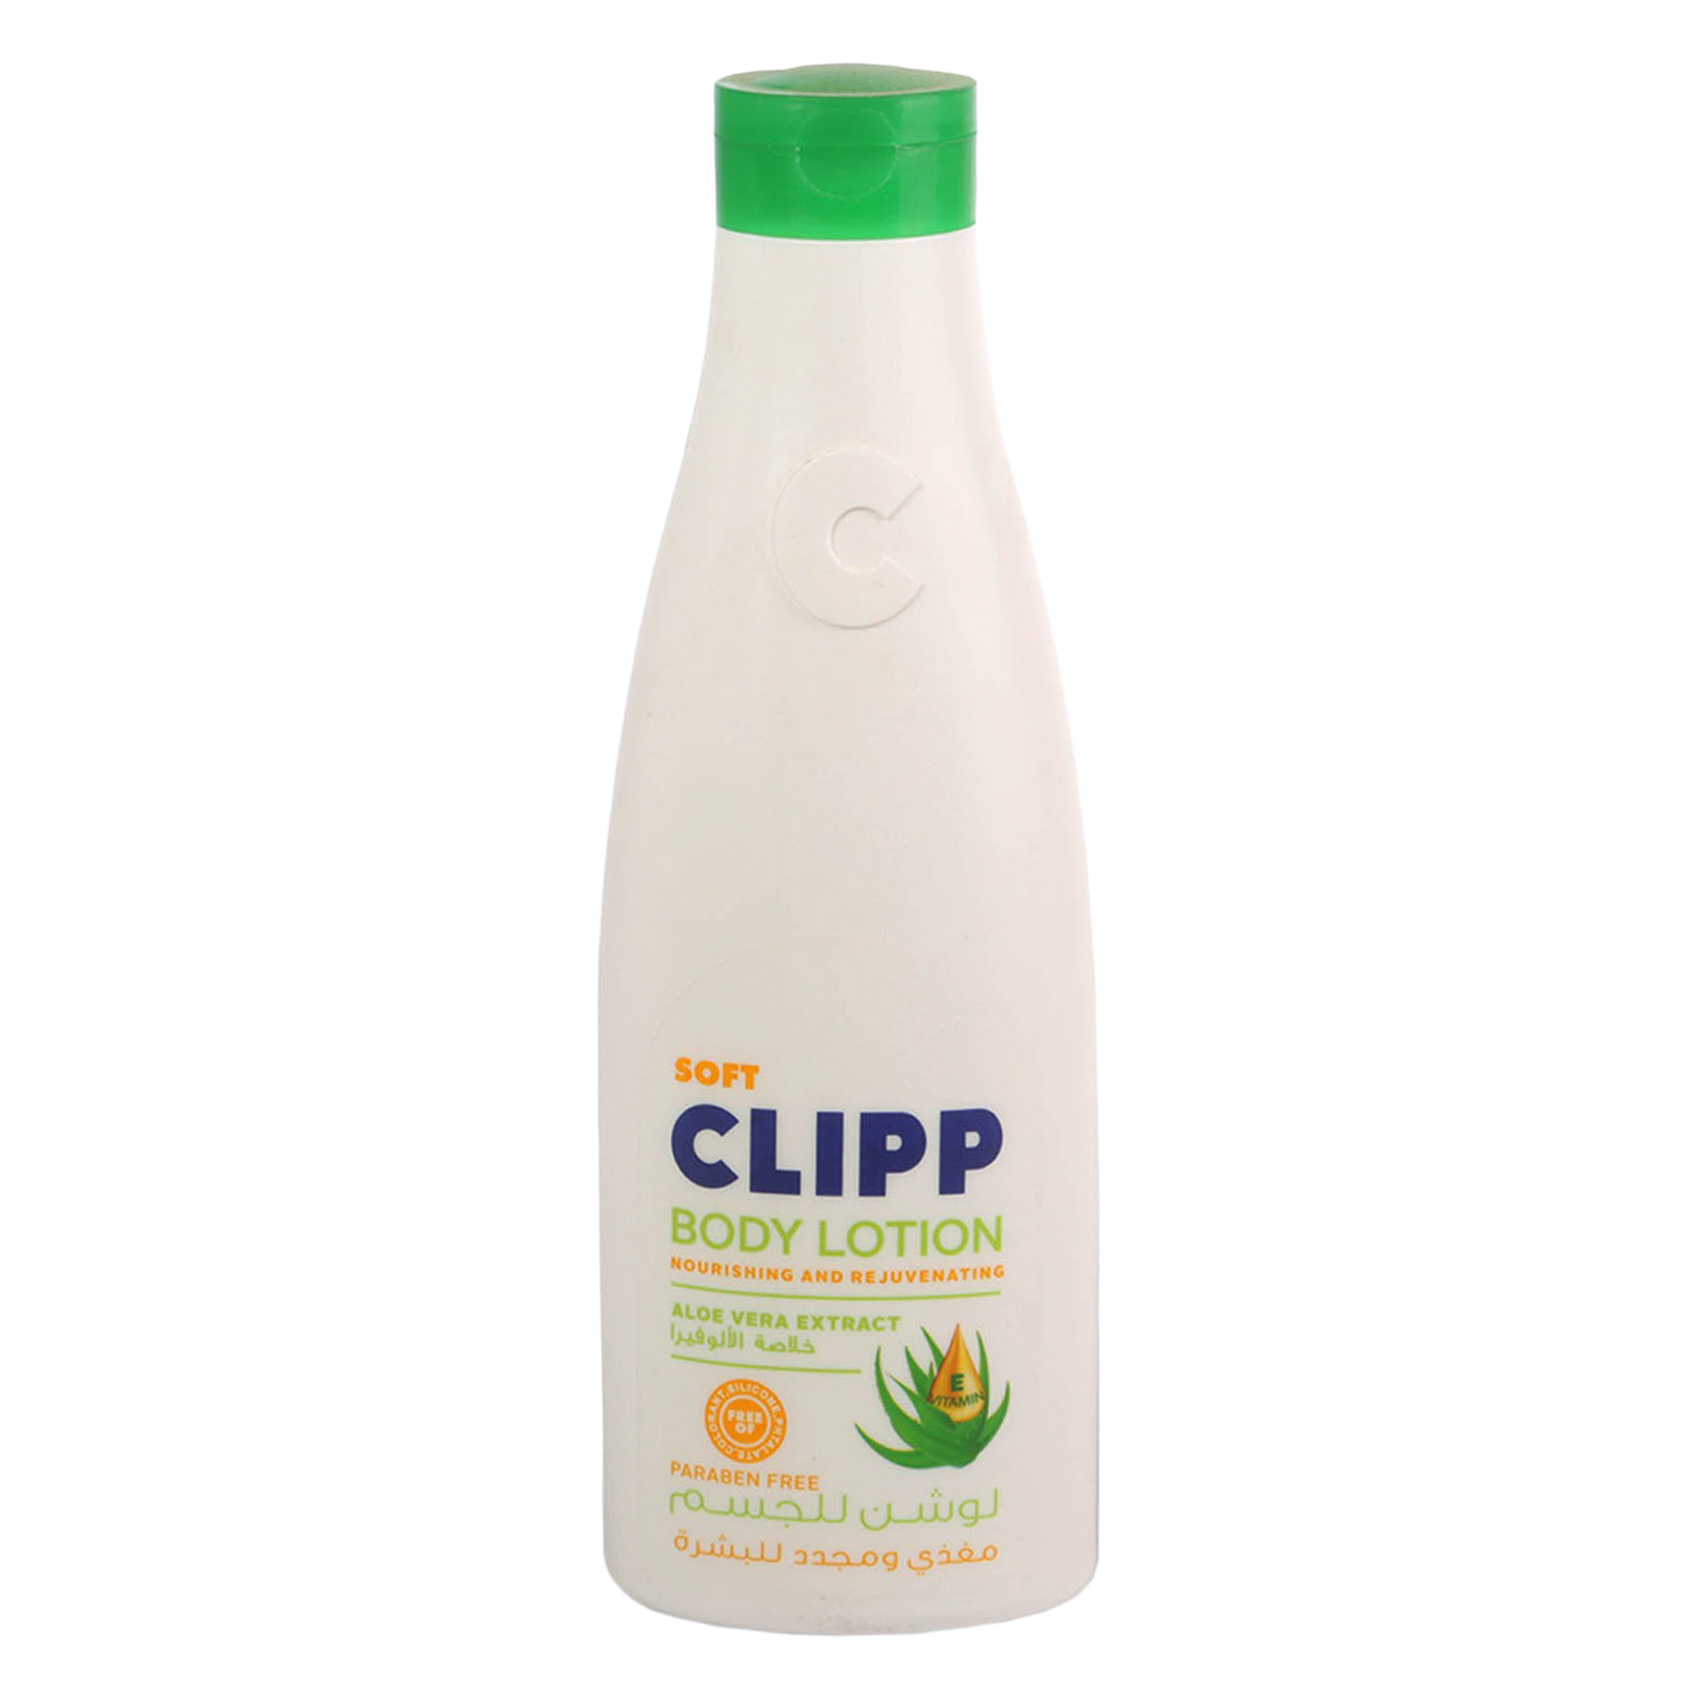 Clipp Aloe Vera Extract Body Lotion 250ml